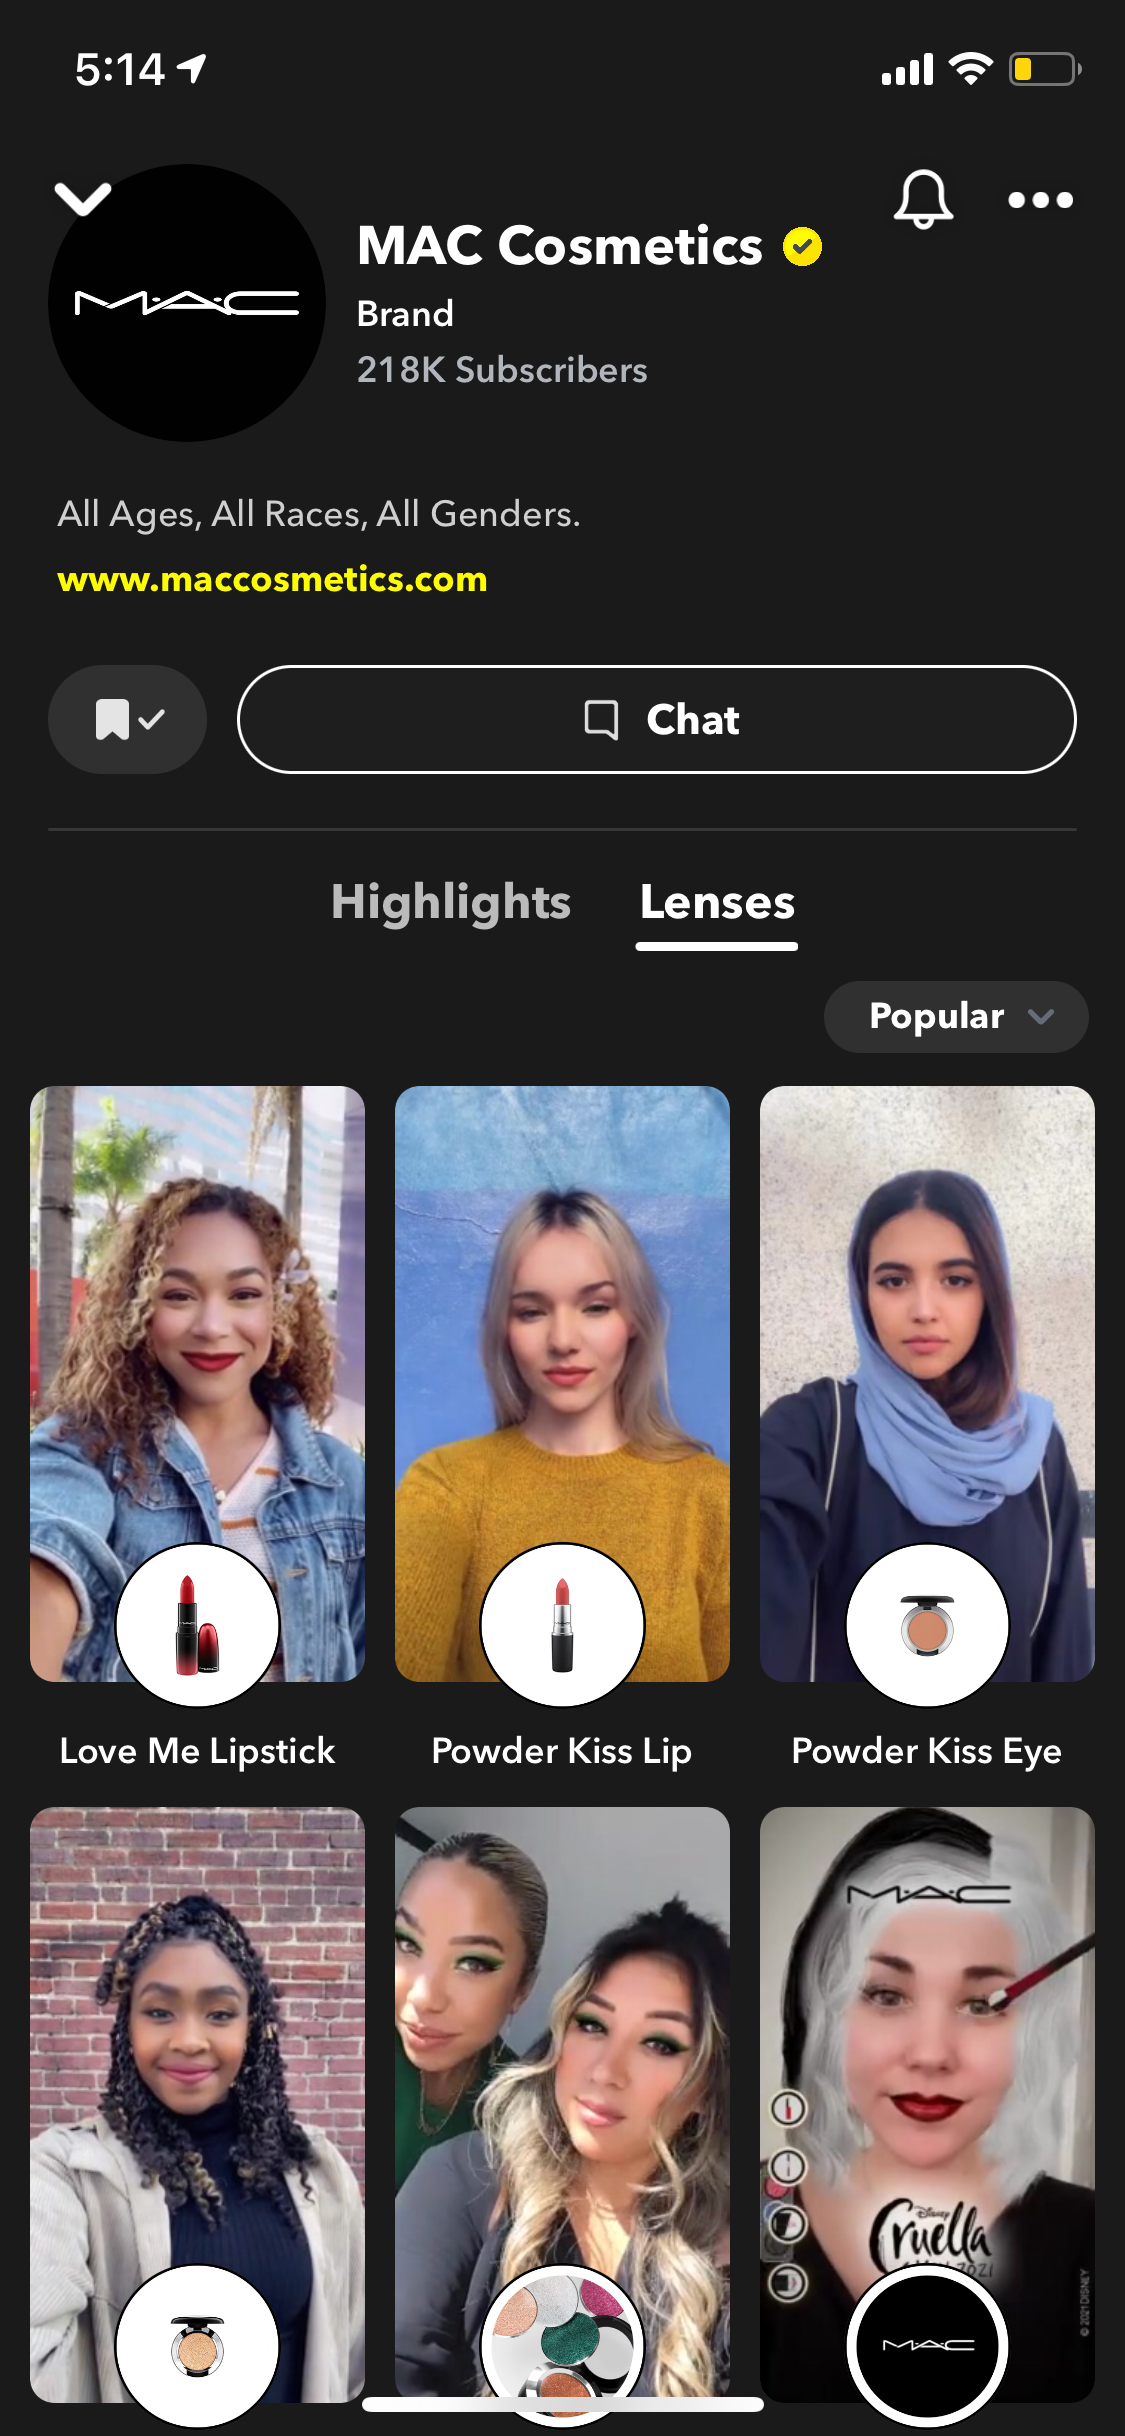 ar lenses for shopping on snapchat